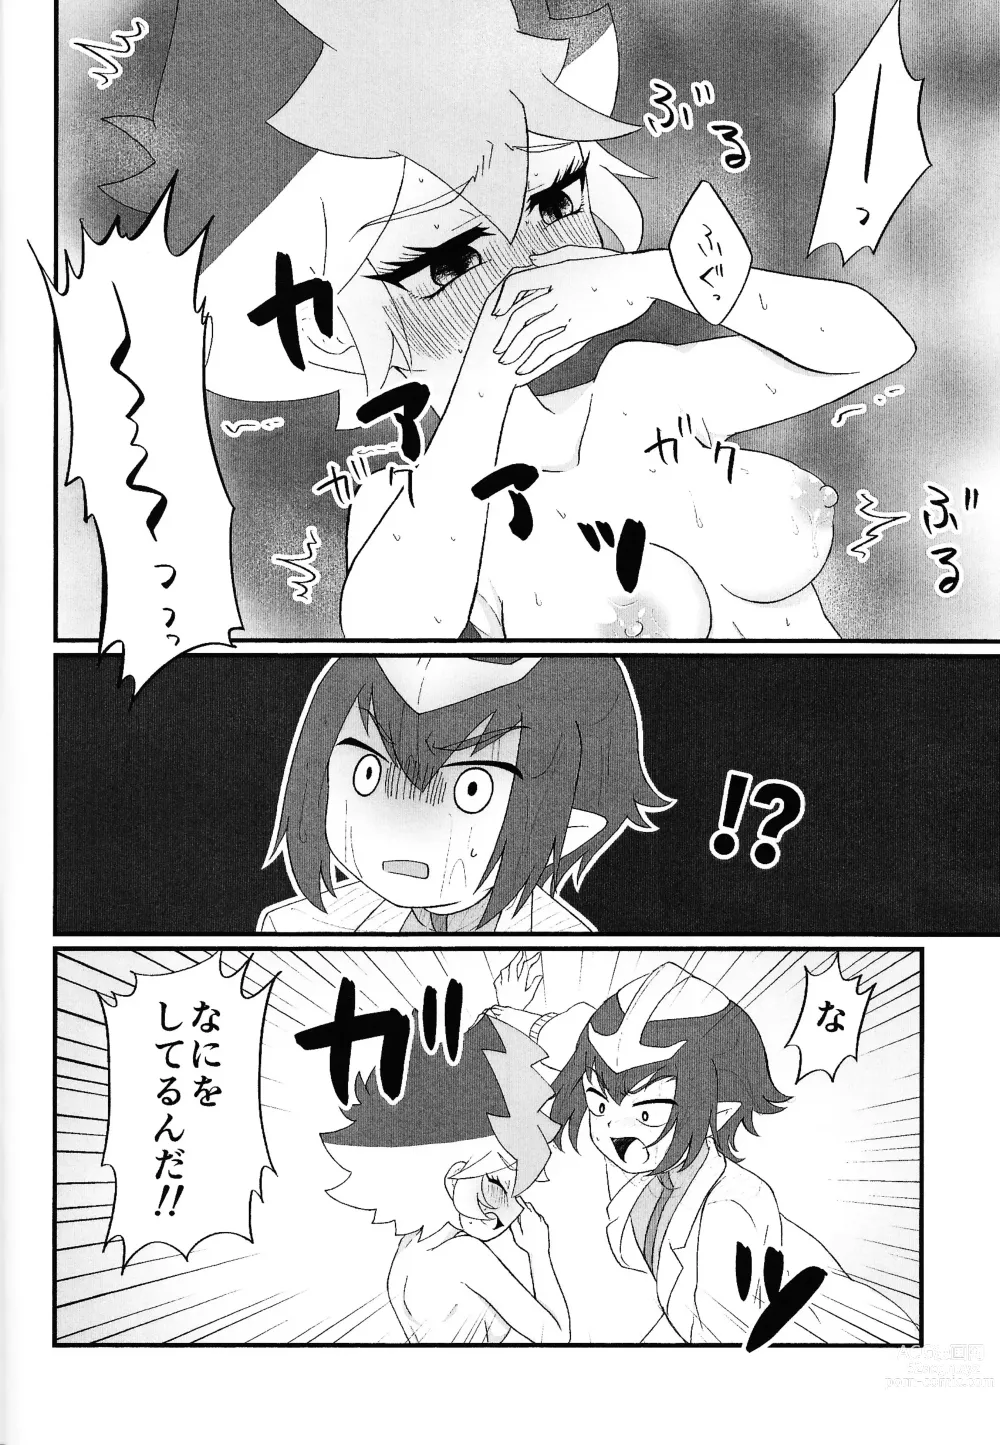 Page 21 of doujinshi Pandoranohako ka kindan no kajitsu ka